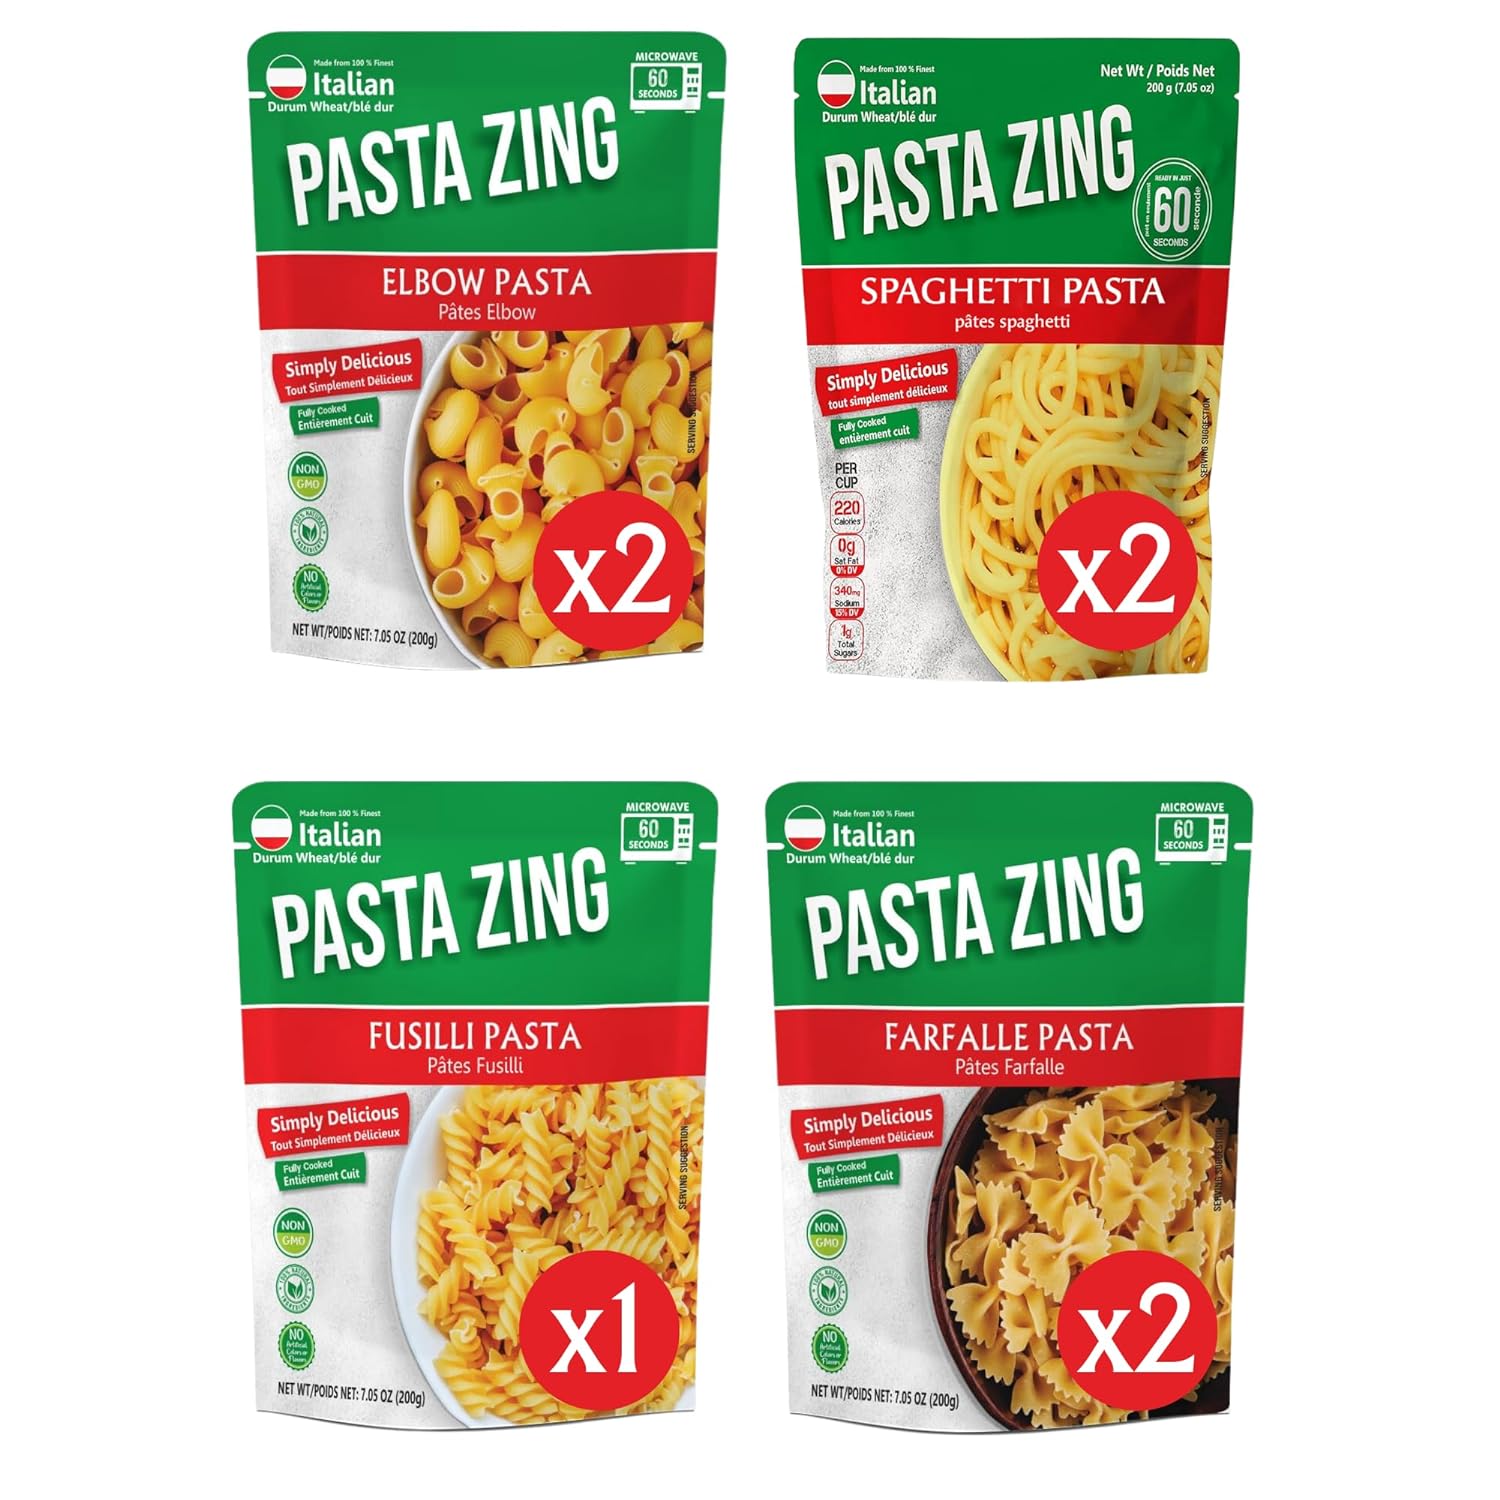 Spaghetti Pasta 200 g X 3 + Farfalle 200 g X 2 + Fusilli 200 g X1 +Elbow 200 g X 2, 7 pouches